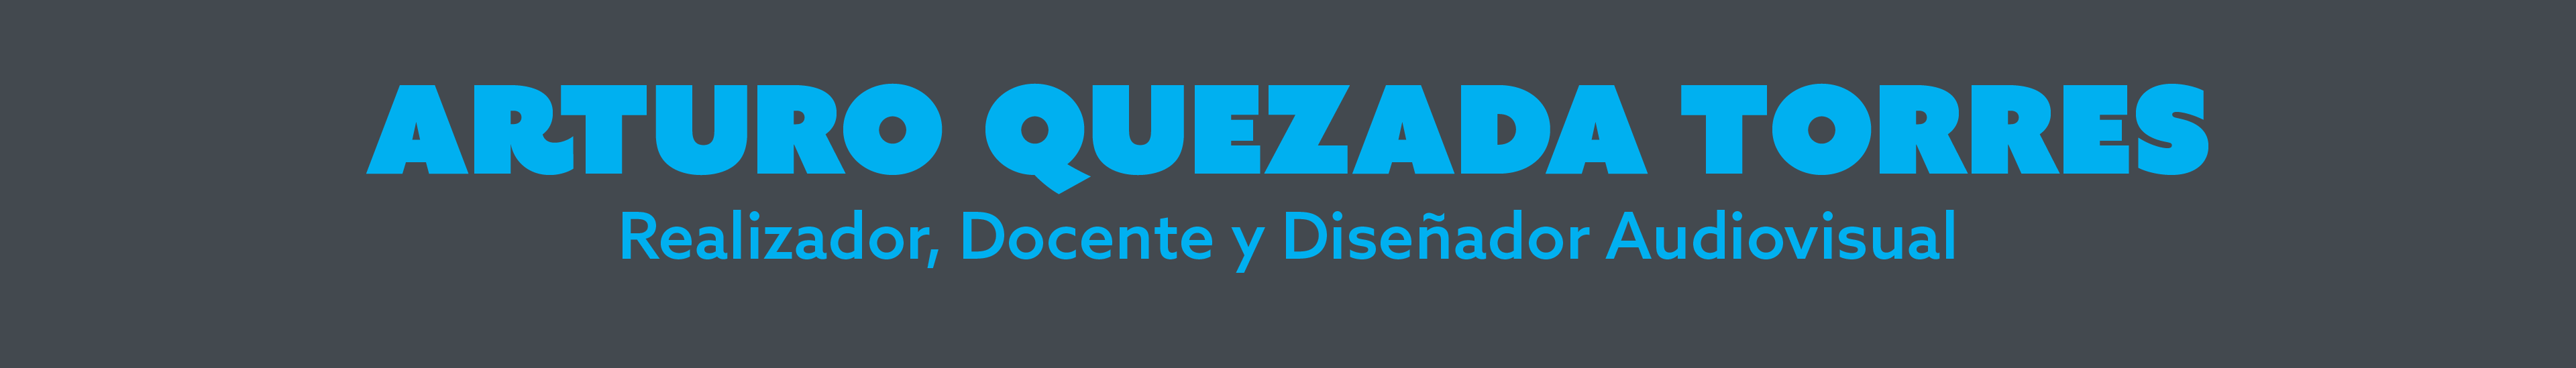 Arturo Quezada Torres's profile banner